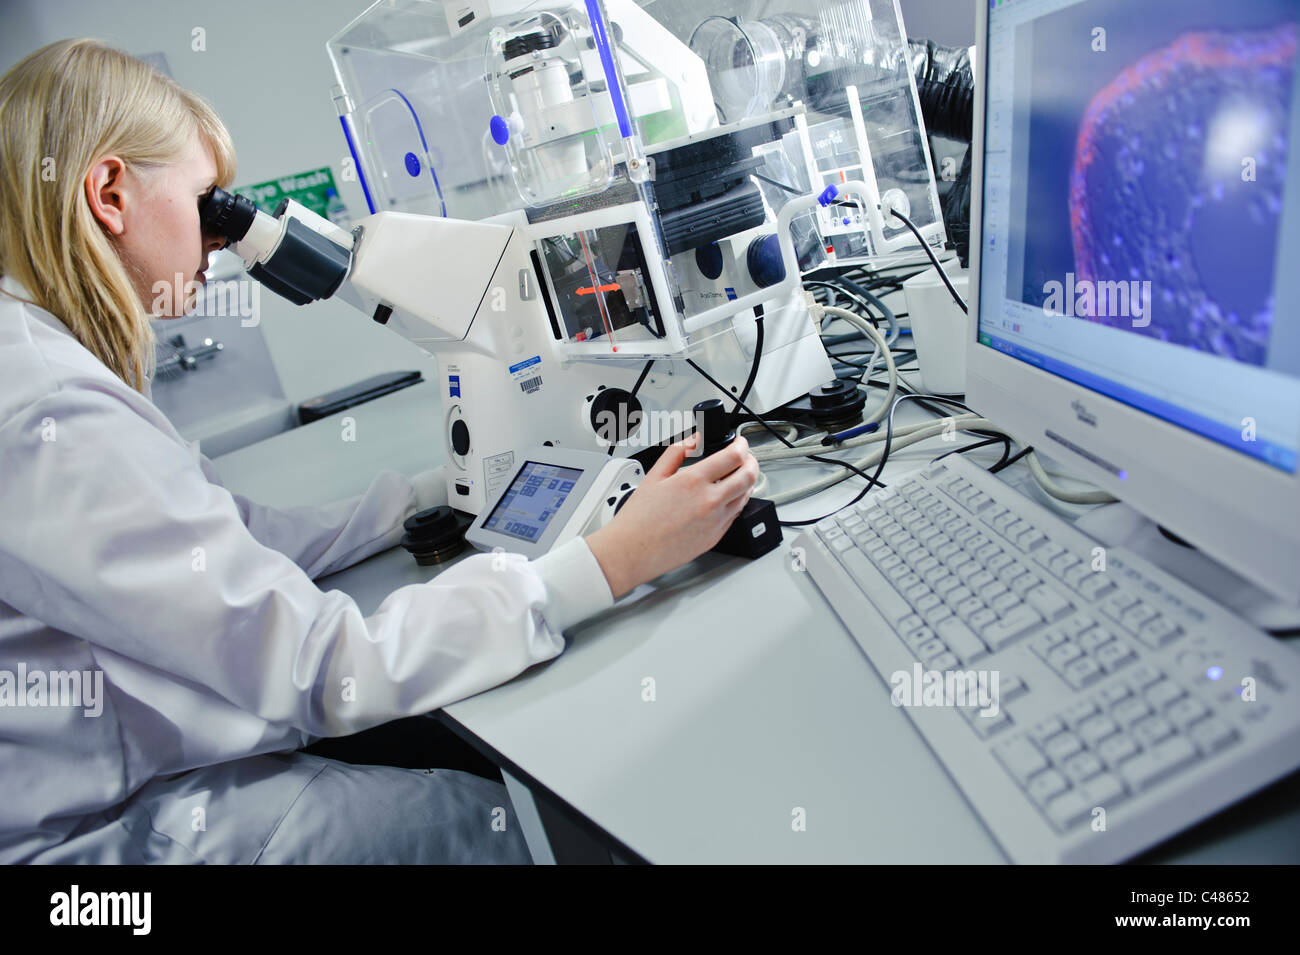 Jeune blonde female scientist sarrau blanc puissant microscope dans un laboratoire de sciences bien éclairée sur l'écran de l'ordinateur des images de cellules Banque D'Images